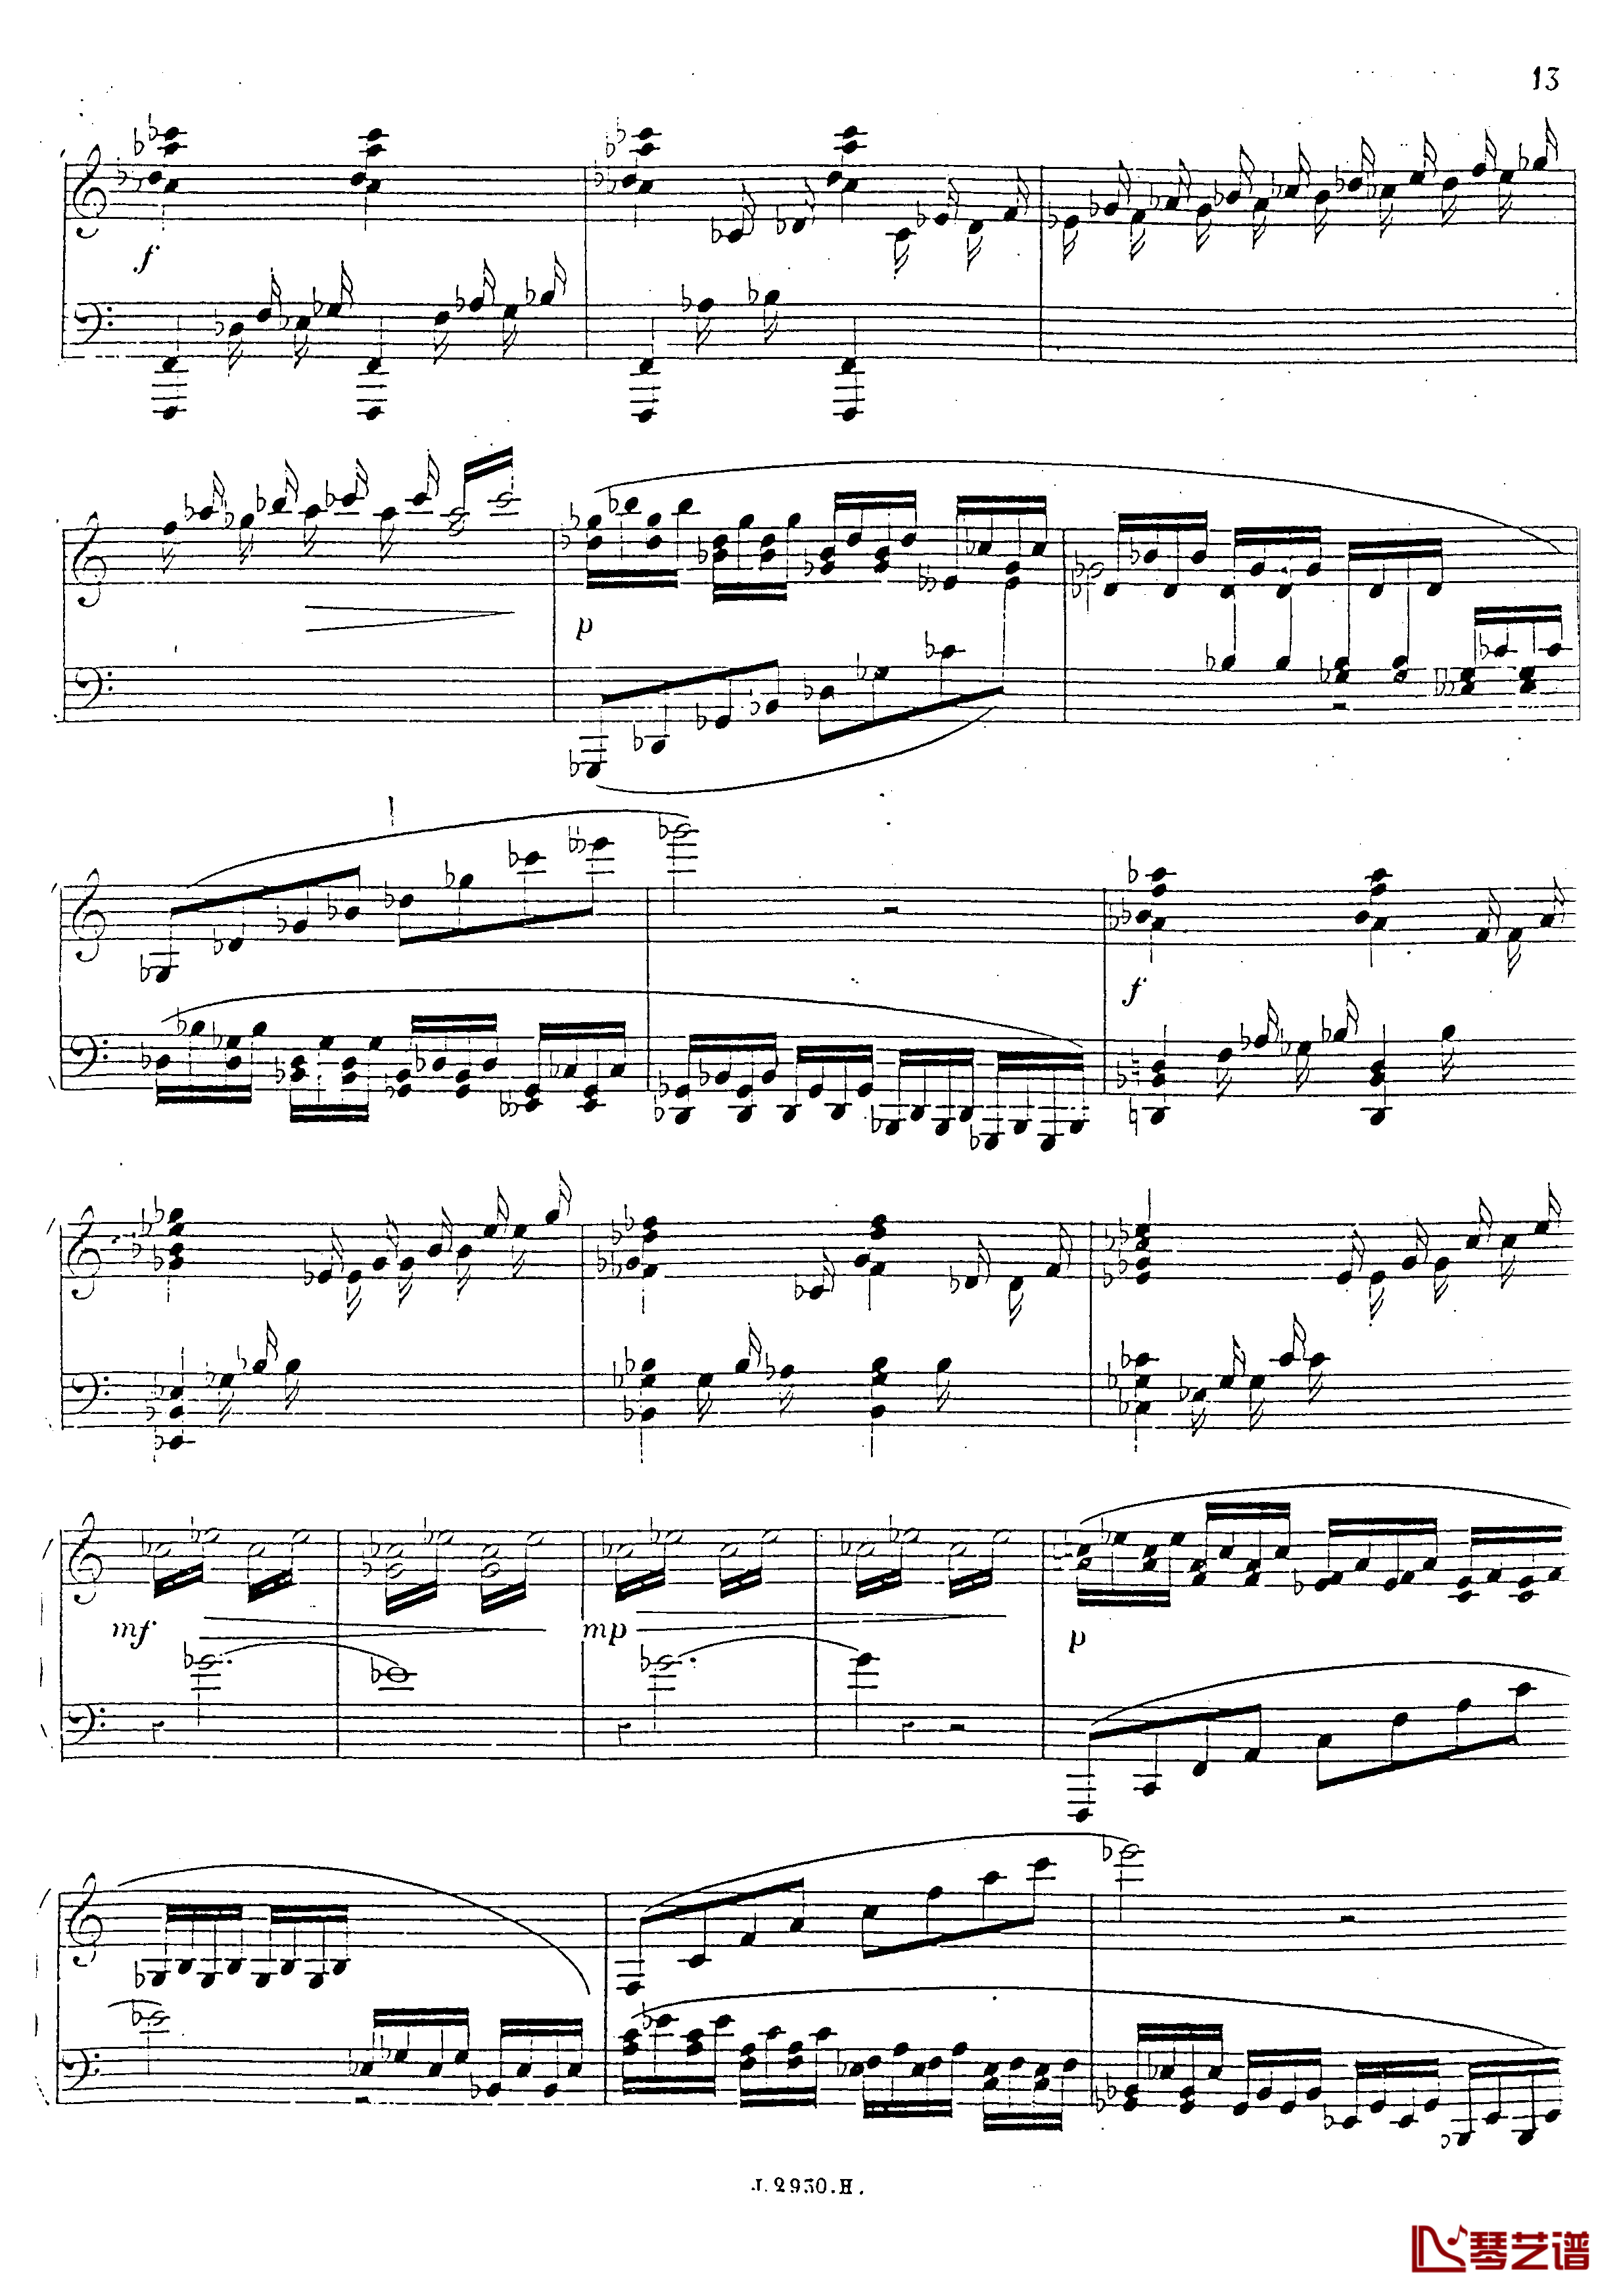 a小调第四钢琴奏鸣曲钢琴谱-安东 鲁宾斯坦- Op.10014